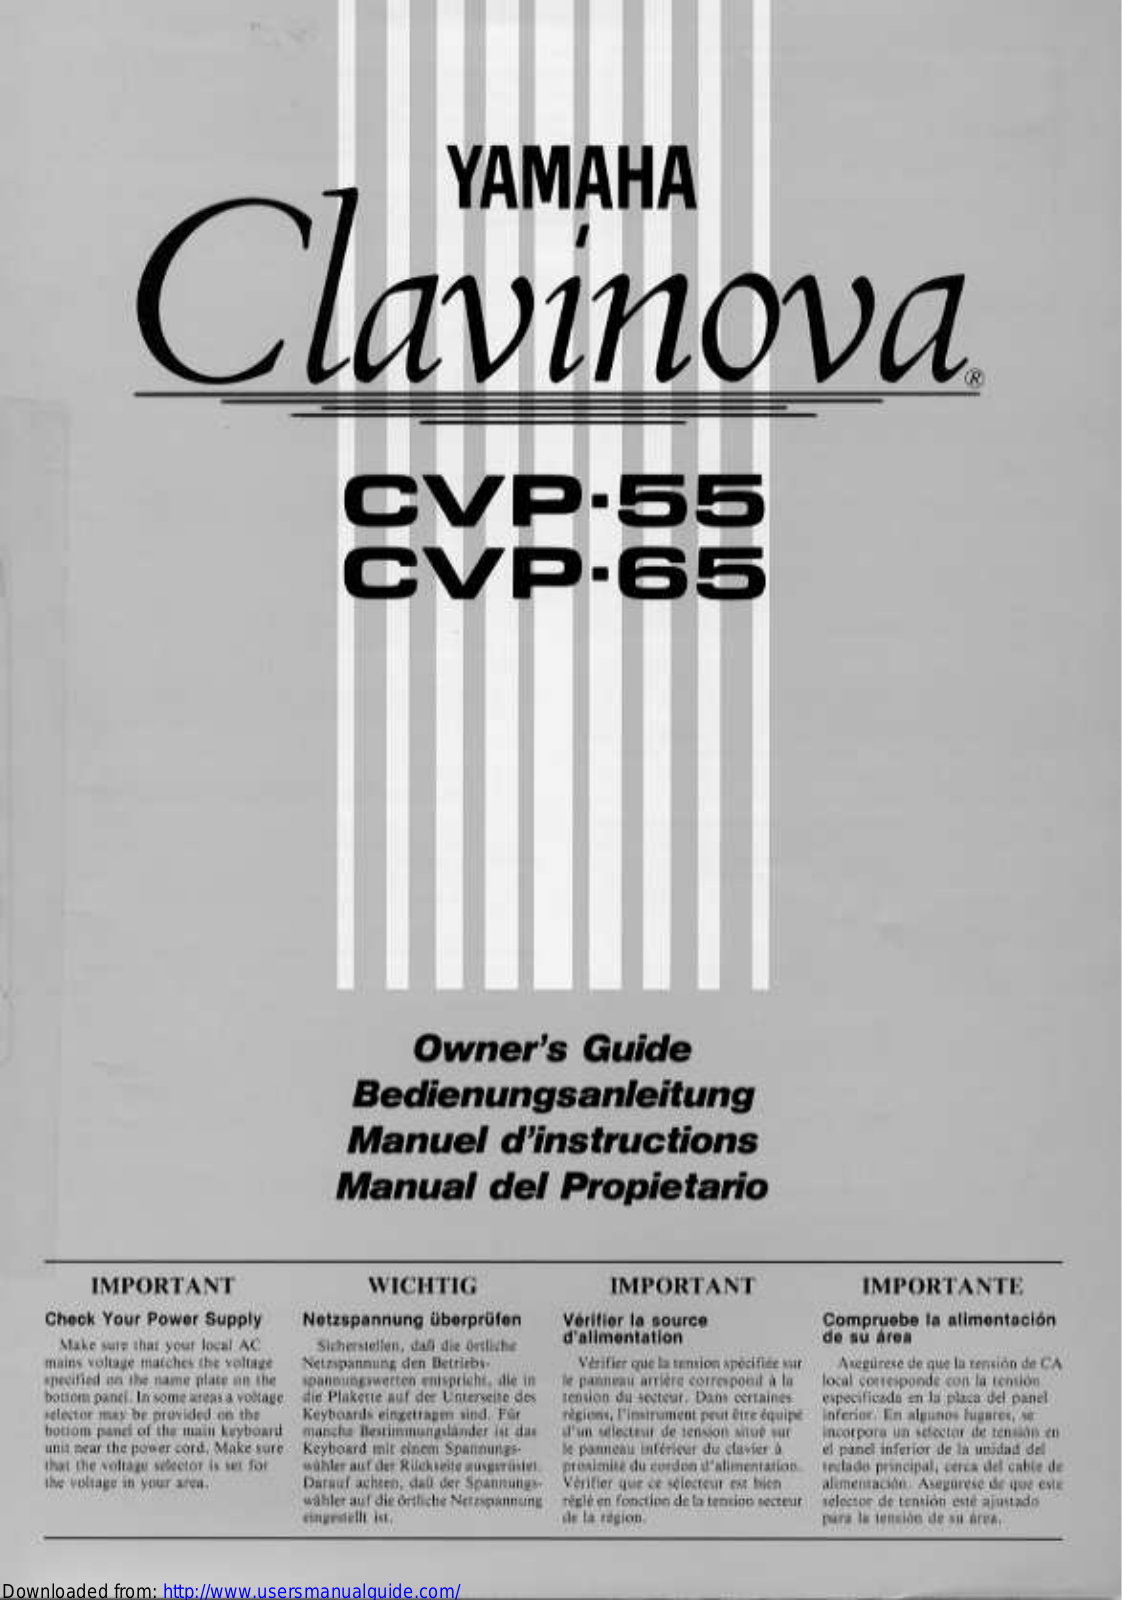 Yamaha Audio CVP-65, CVP-55 User Manual